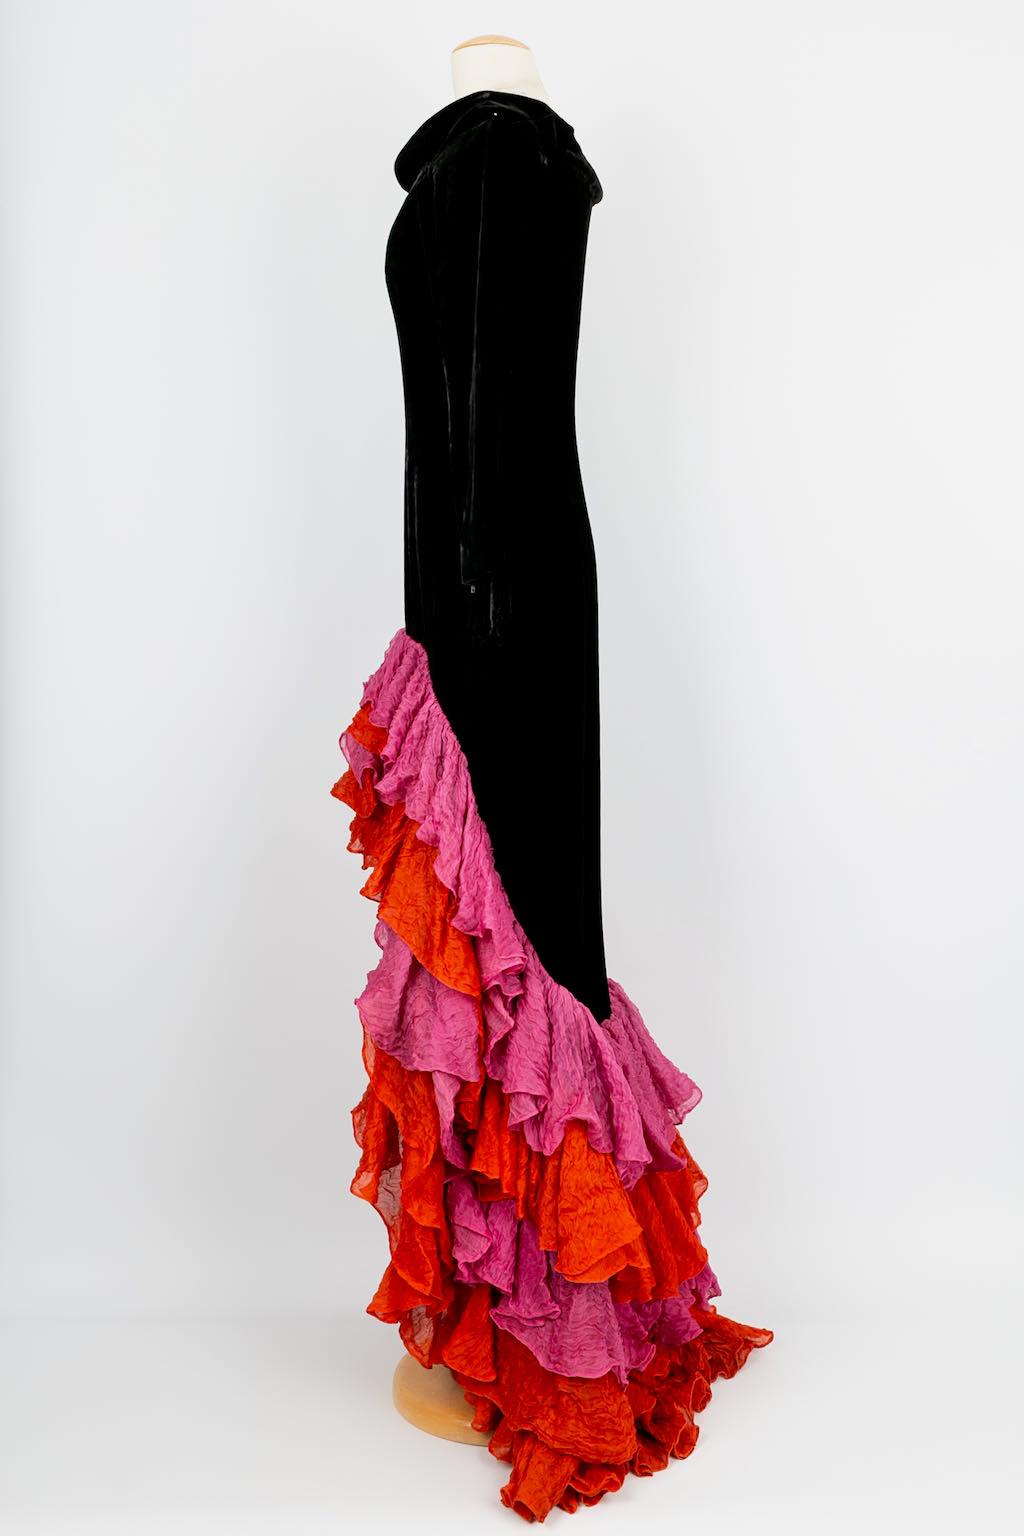 Yves Saint Laurent -(Made in France) Schwarzes Haute Couture-Abendkleid aus Seidensamt mit Volants aus Organza. Bolduc anwesend, Nummer 67648. Keine Zusammensetzung Label oder Größe angegeben, es passt ein 36FR.

Zusätzliche Informationen: